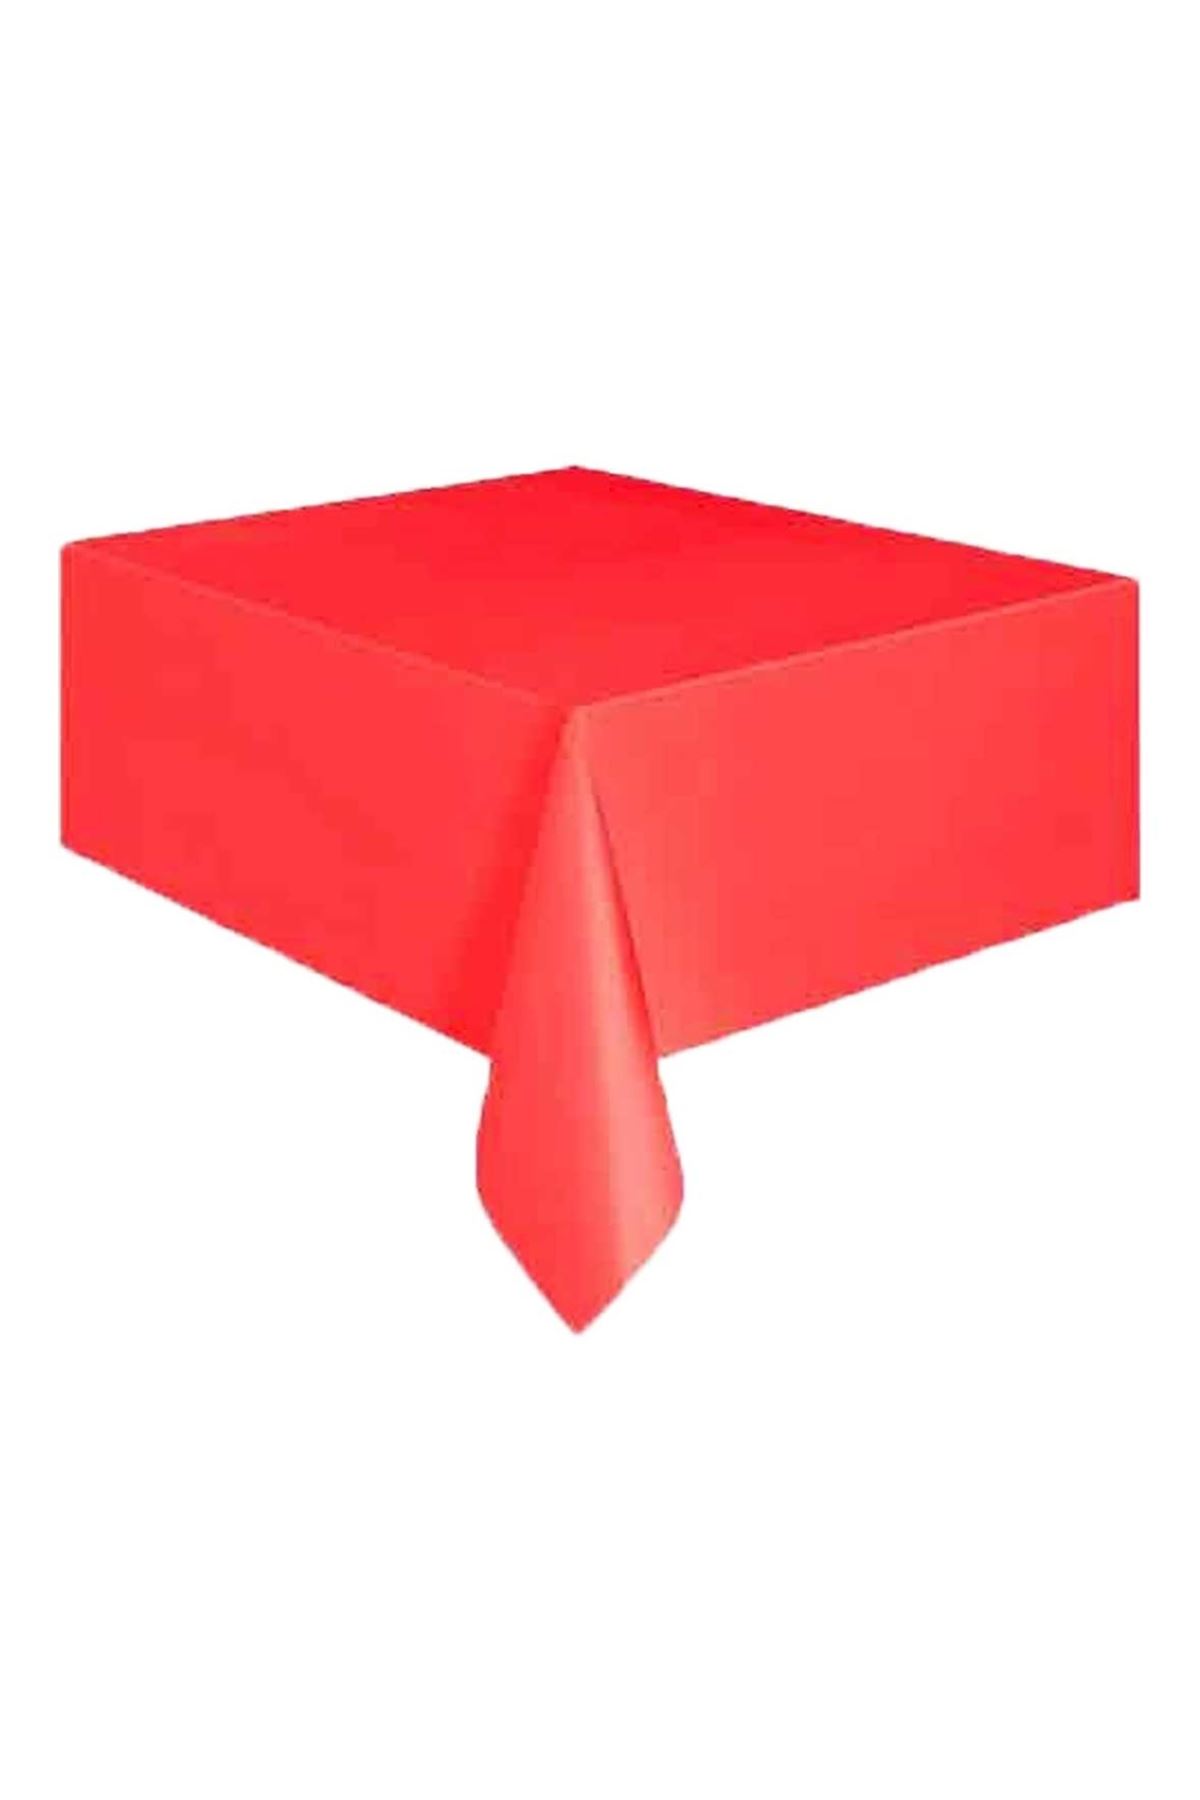 Masa Örtüsü Plastik Kırmızı